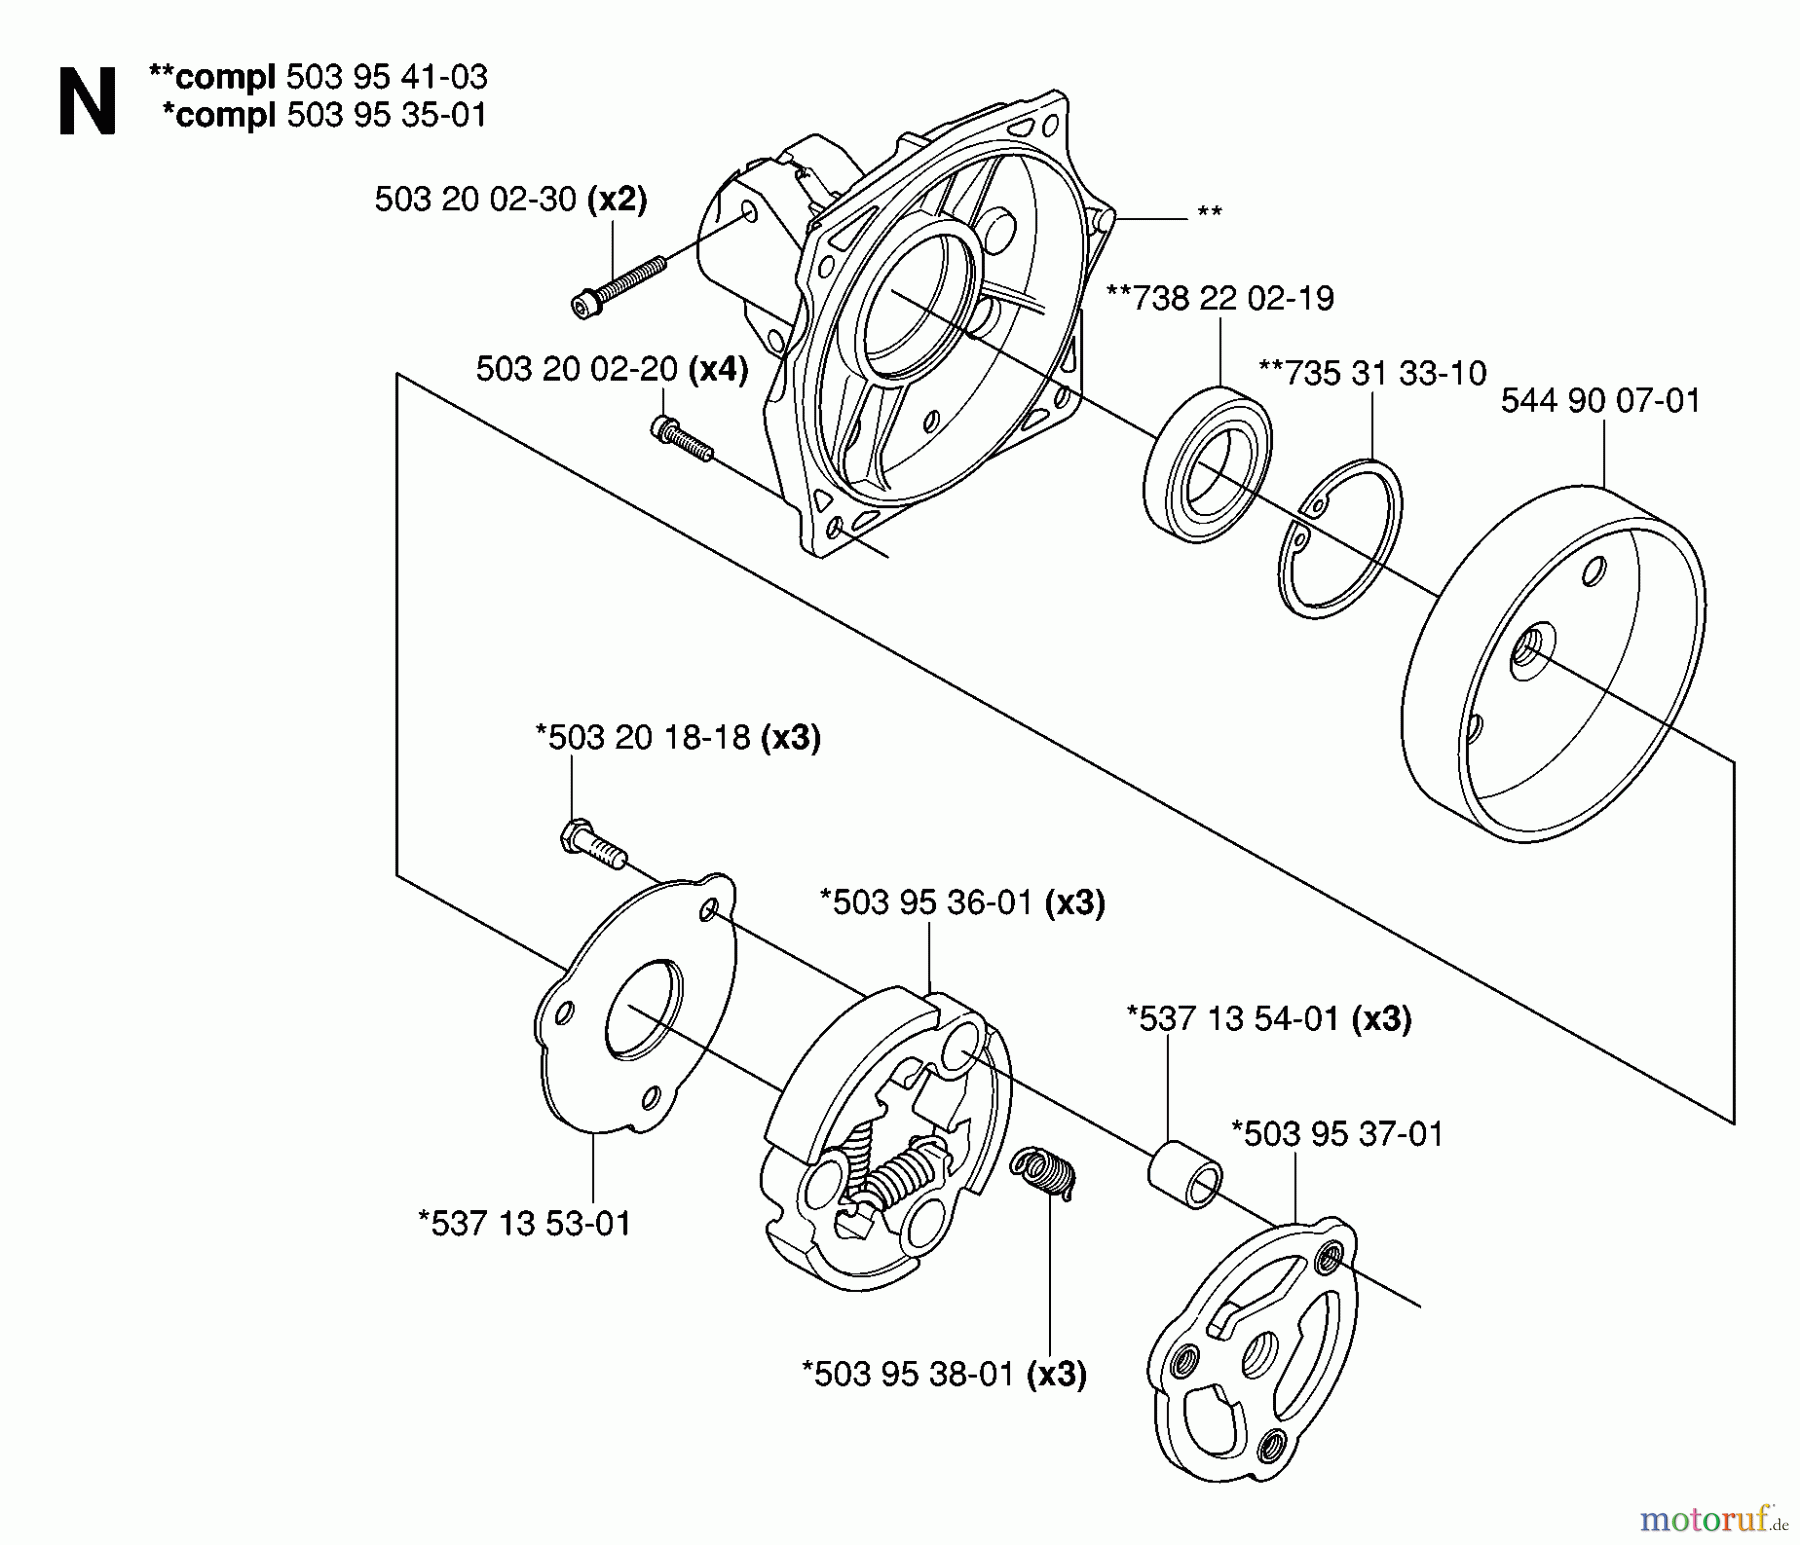  Jonsered Motorsensen, Trimmer FC2145W - Jonsered String/Brush Trimmer (2006-01) CLUTCH